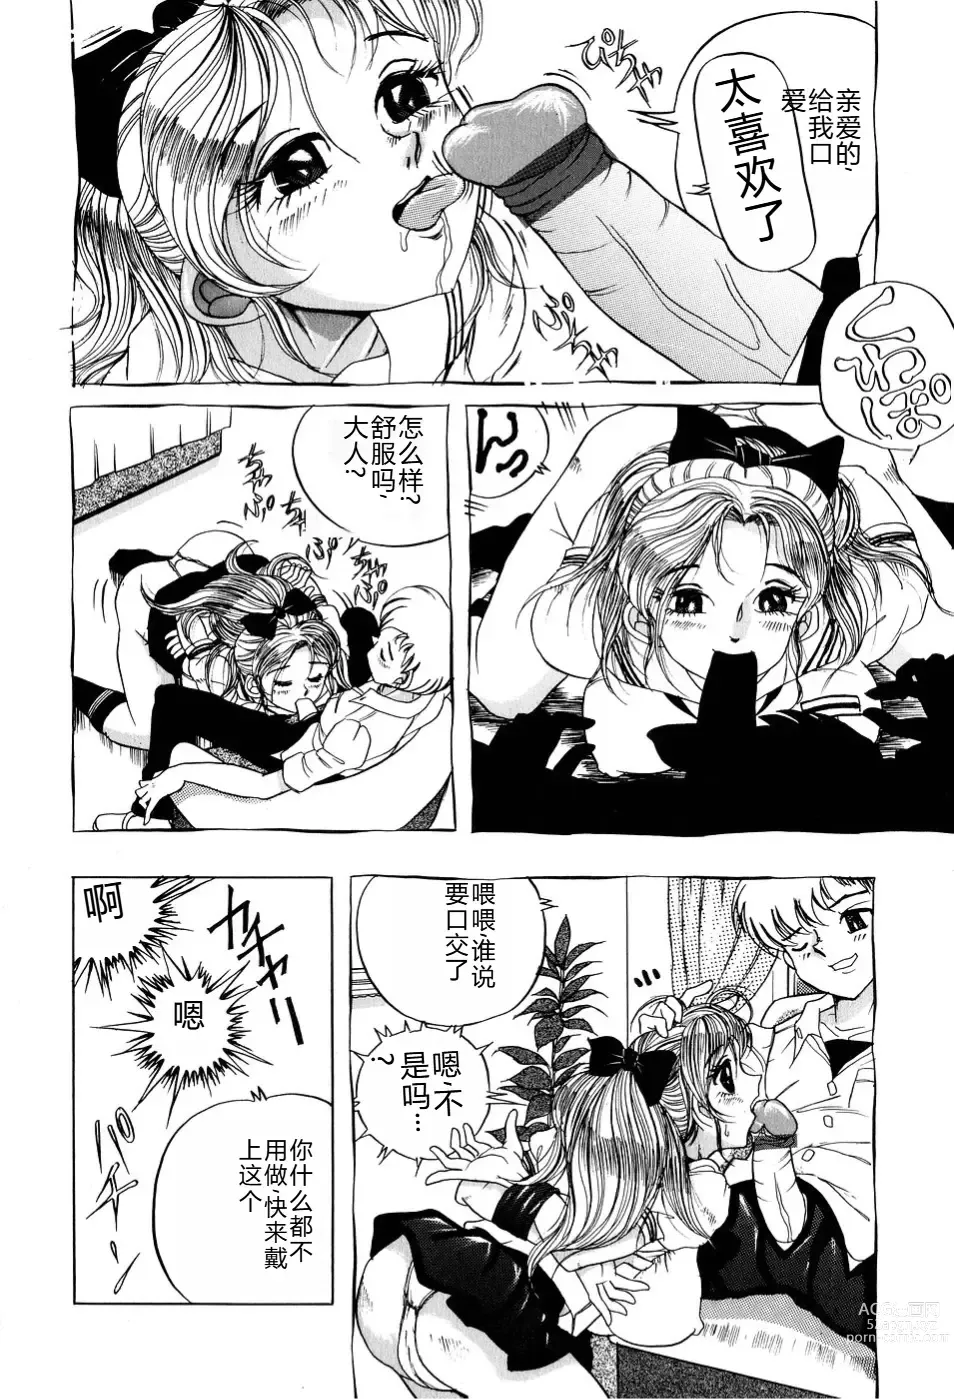 Page 157 of manga Kusozume Benkihime